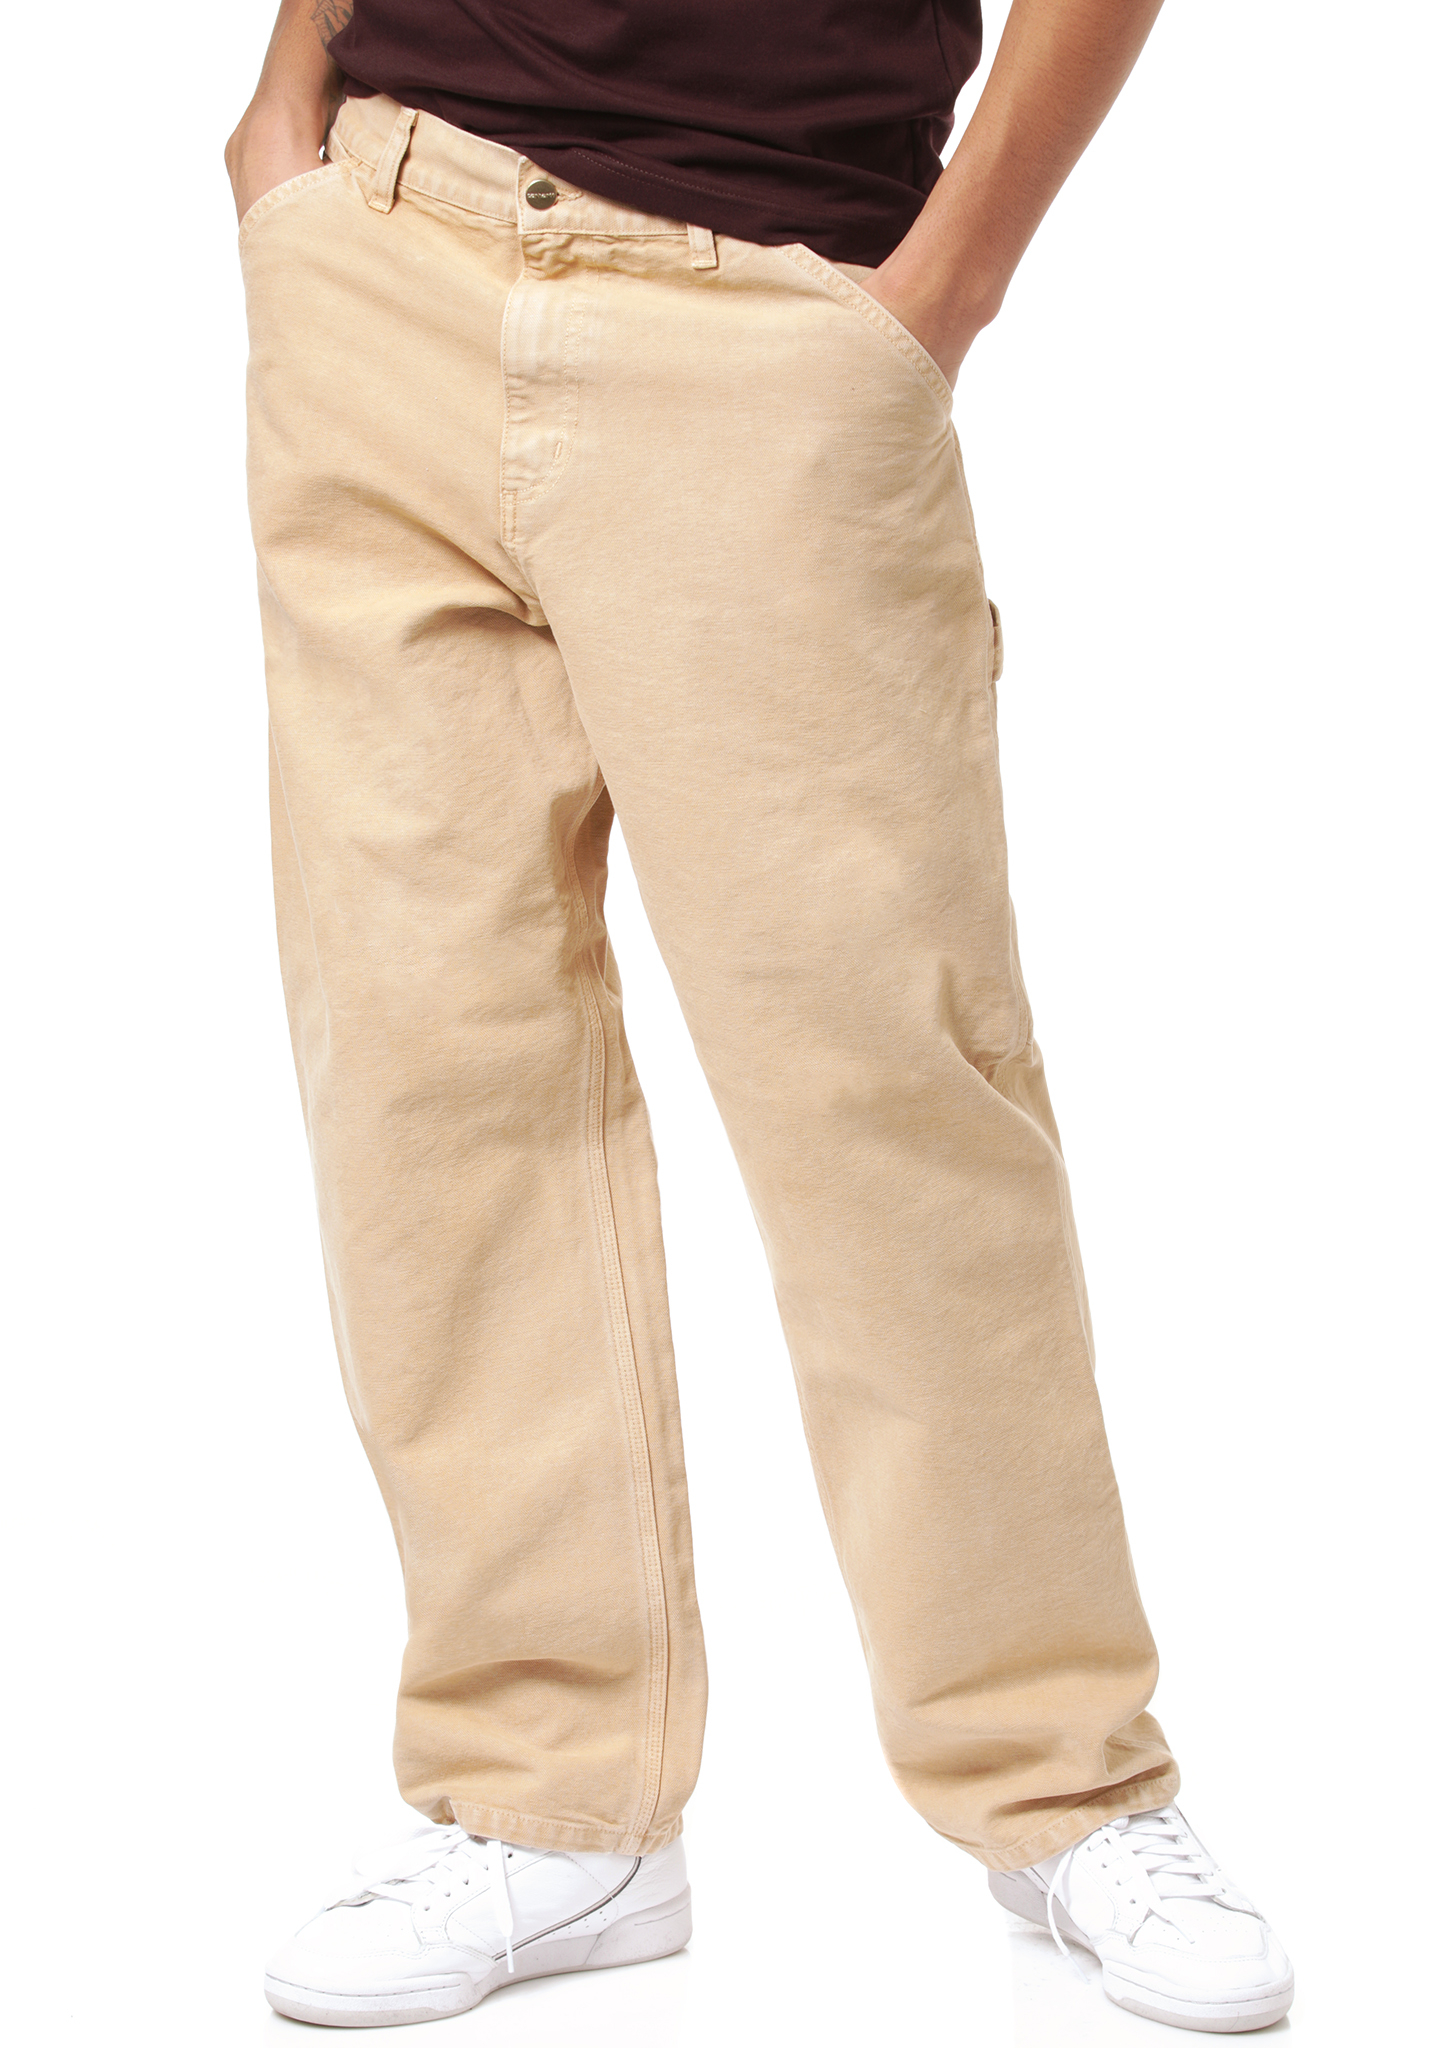 Carhartt WIP Single Knee Jeans abgenutzte leinwand staubig h braun 33/32